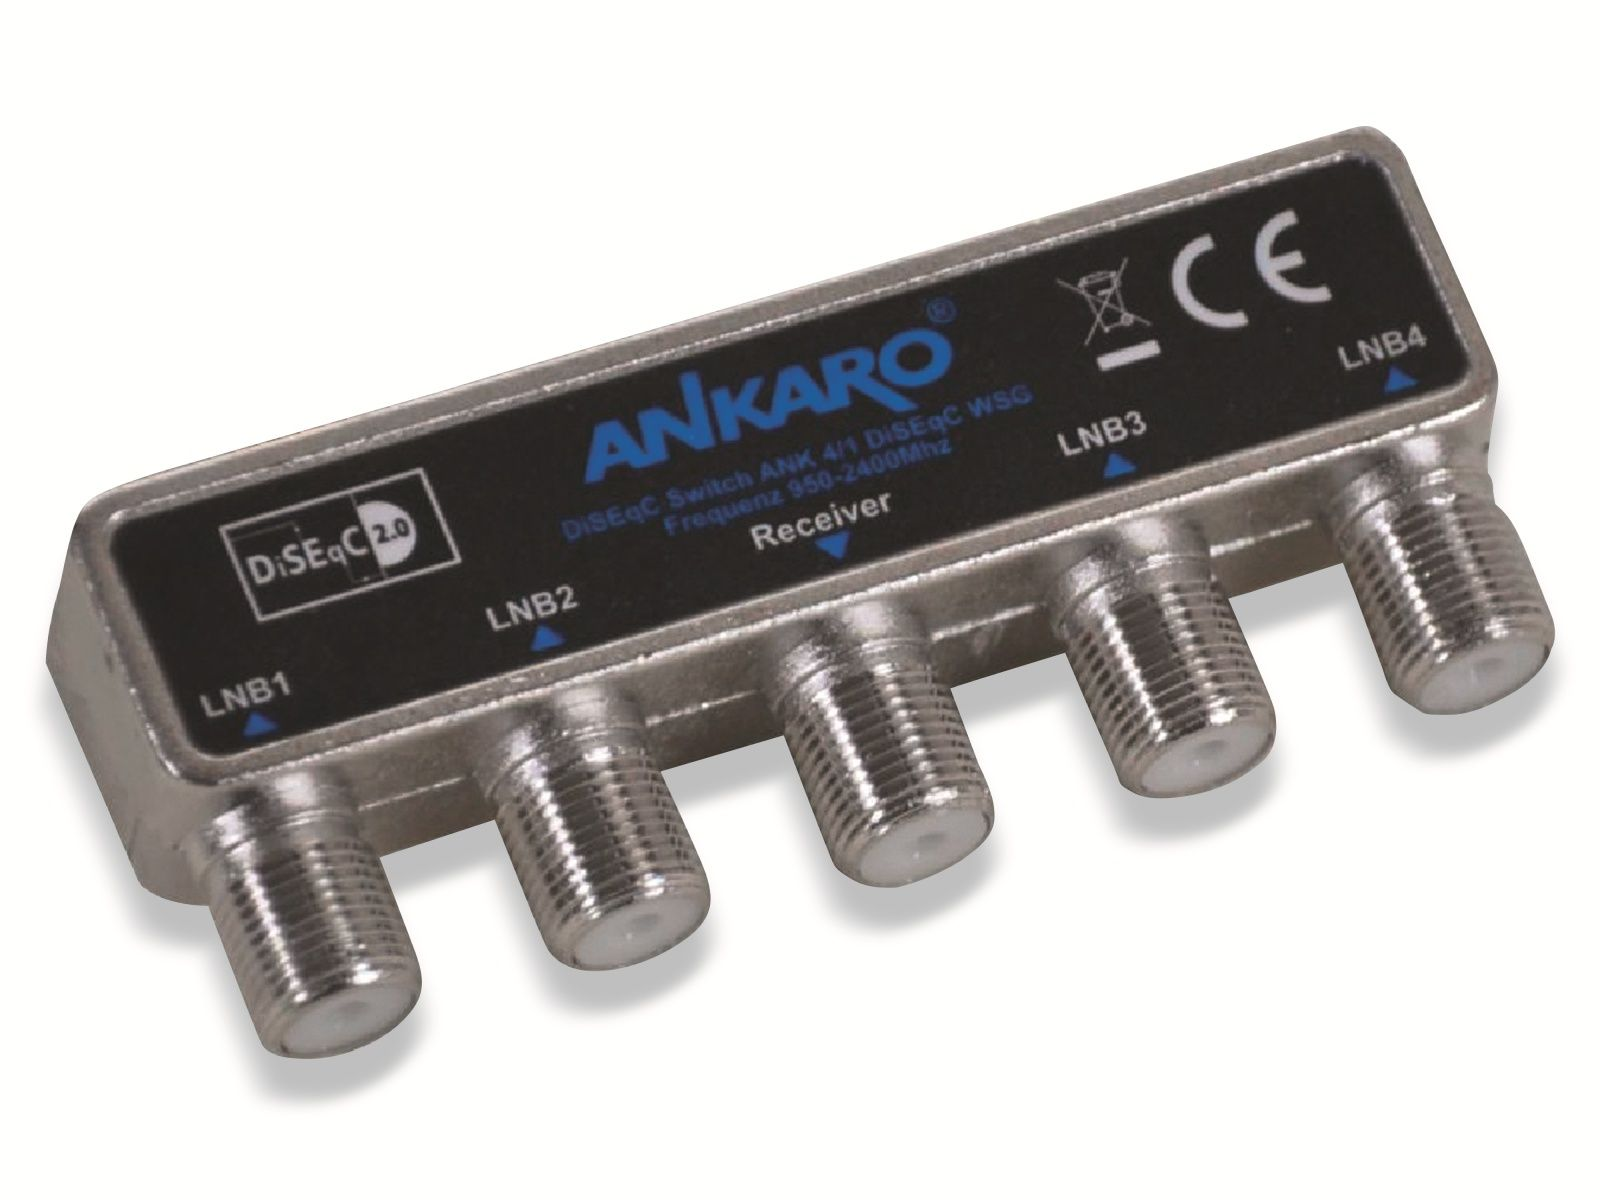 ANKARO ANK 4 Ausgang, mit Wetterschutzgehäuse, für WSG Schalter 4/1 DiSEqC Mastmontage SAT-Multischalter LNCs,1 für 2.0